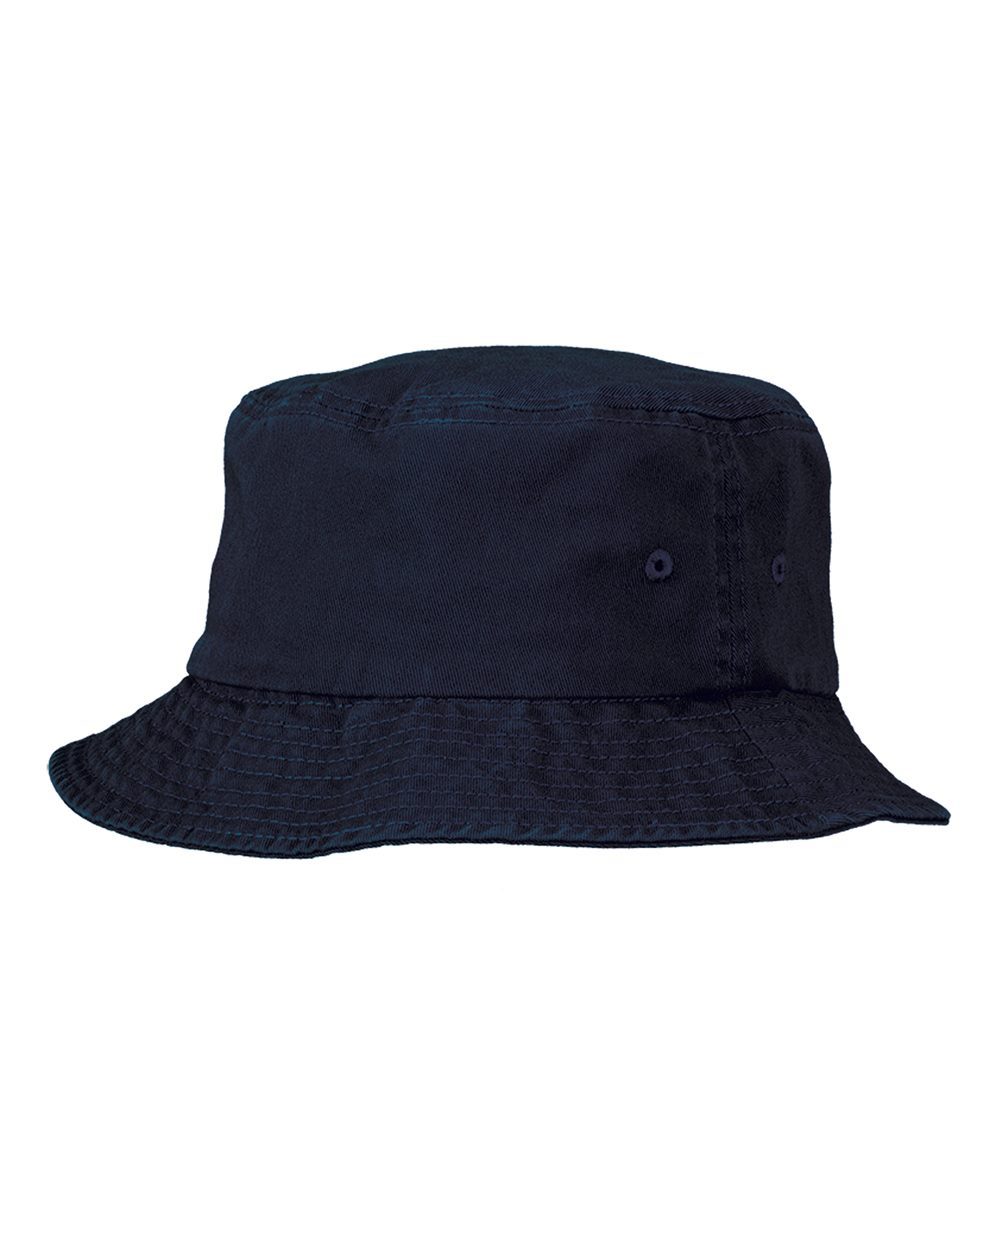 Sportsman 2050 - Bucket Hat